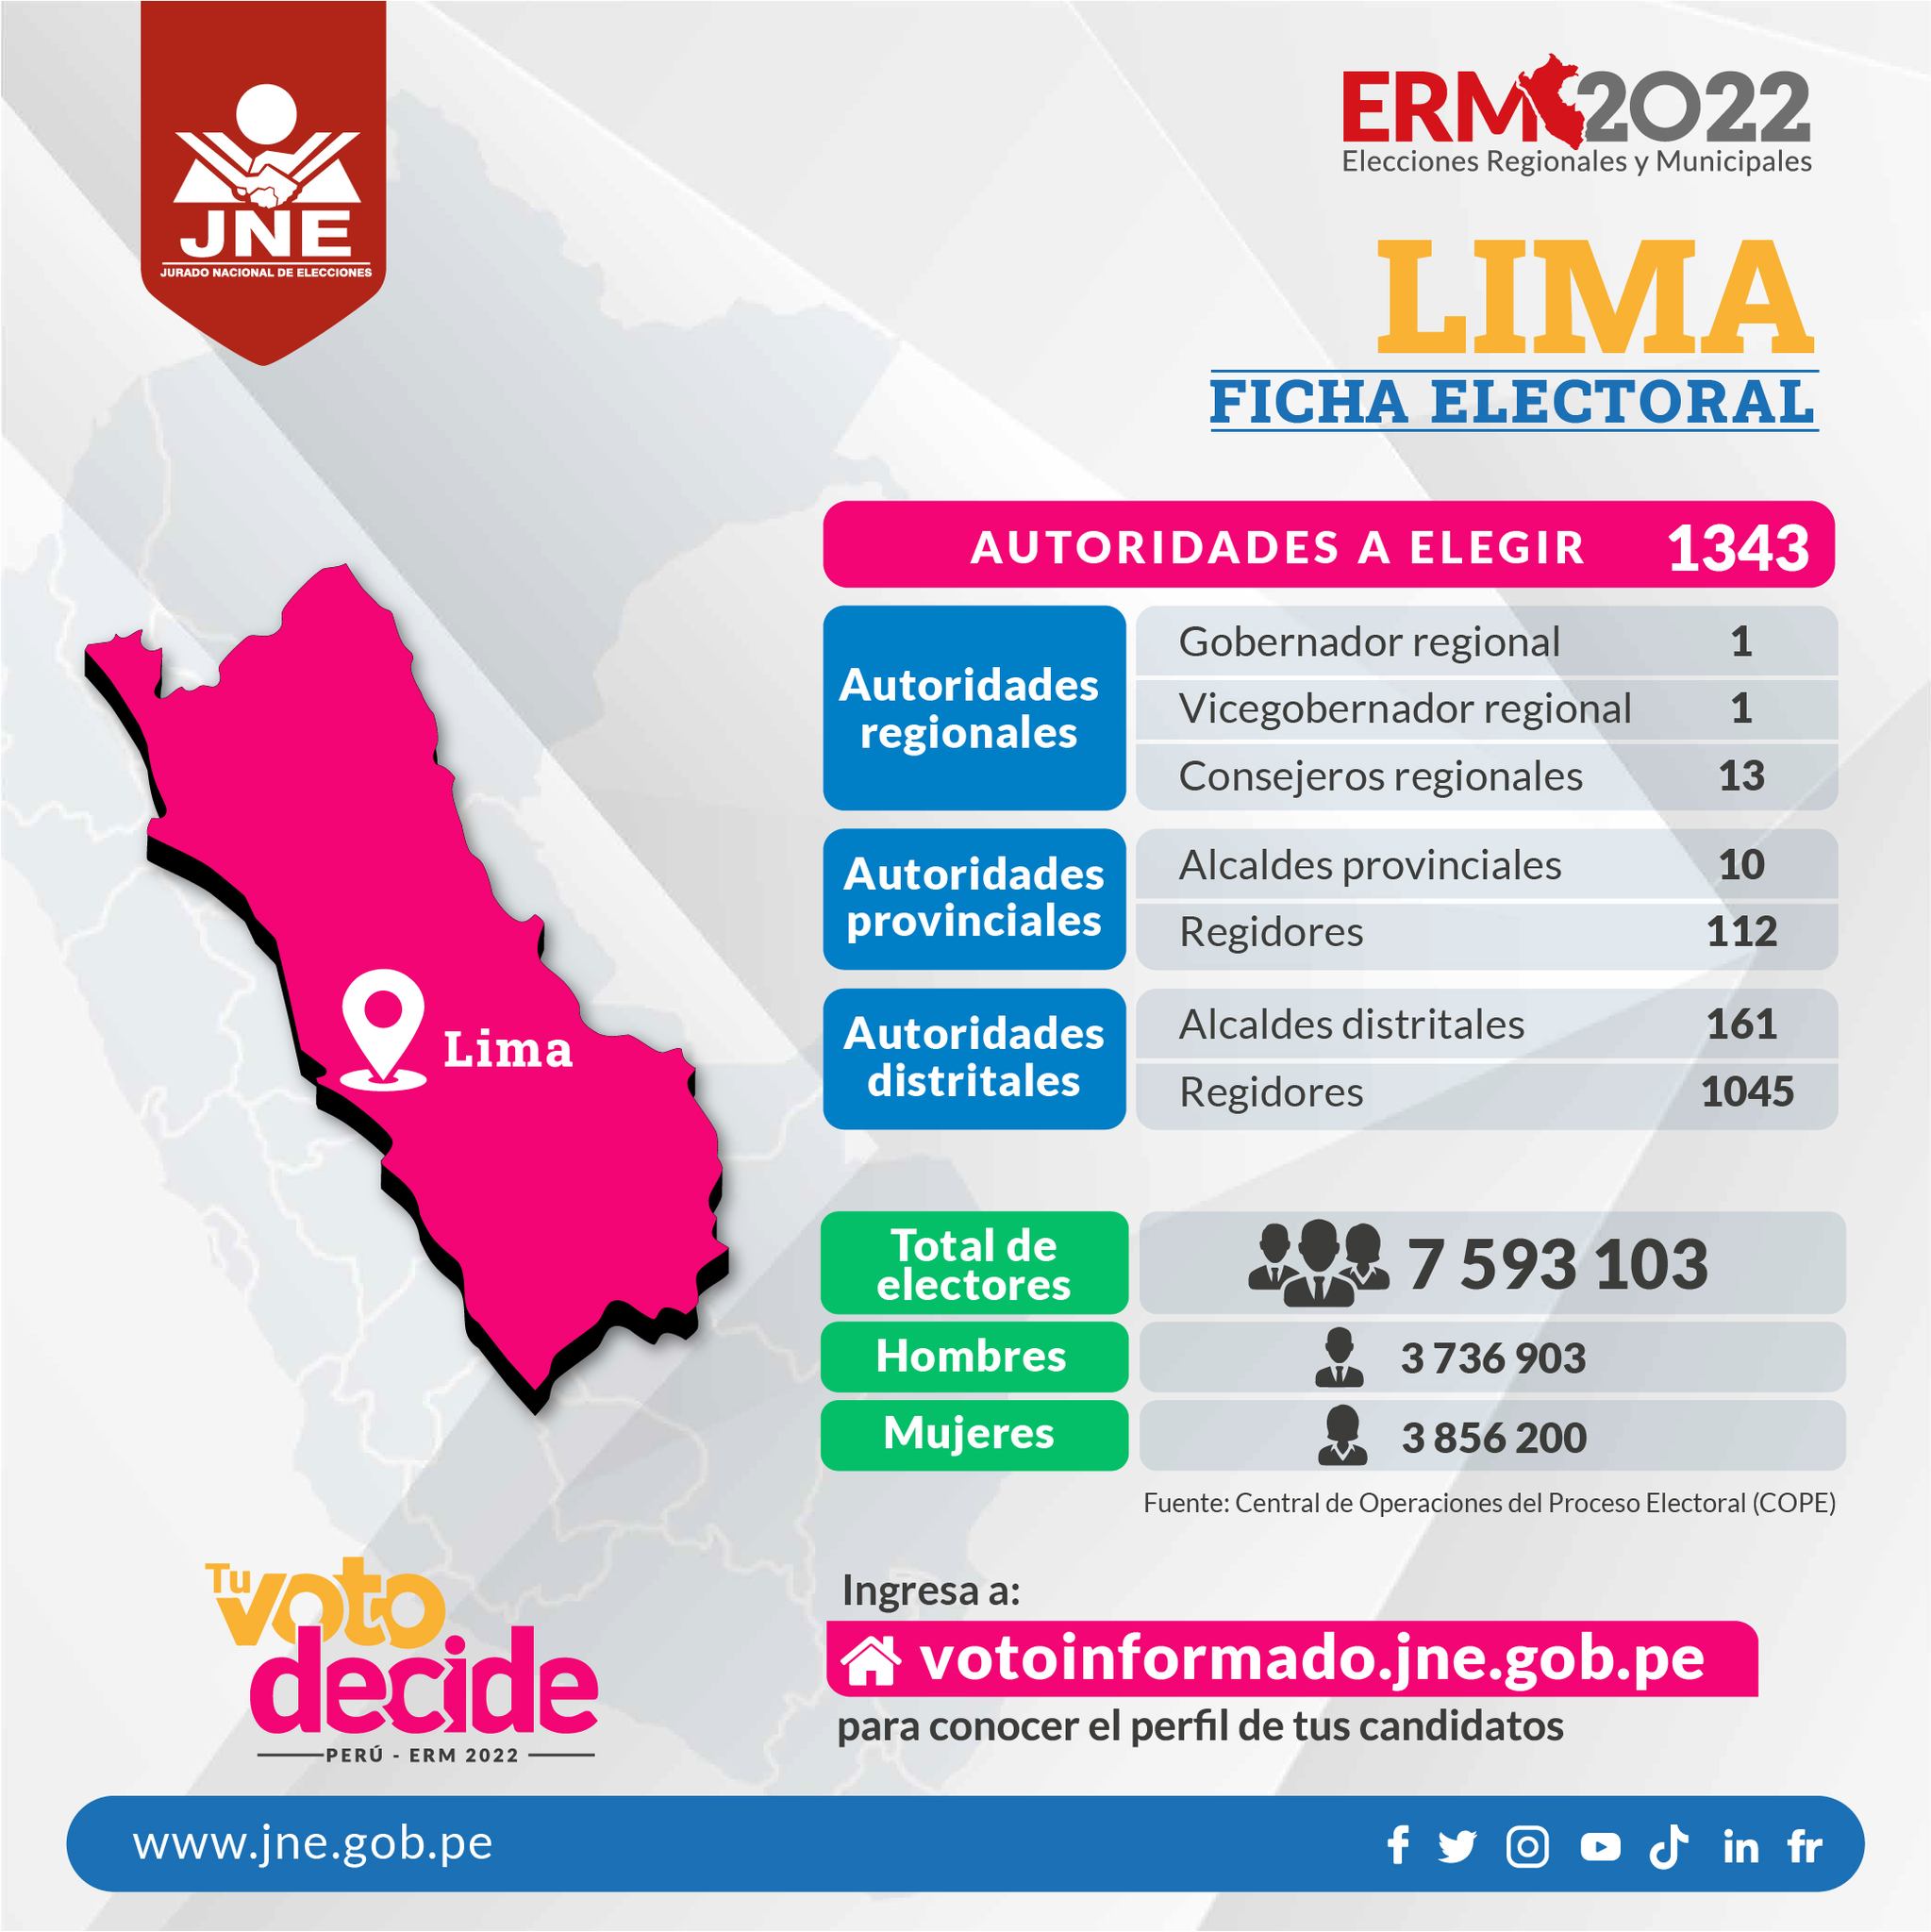 Ficha electoral de Lima en las Elecciones 2022